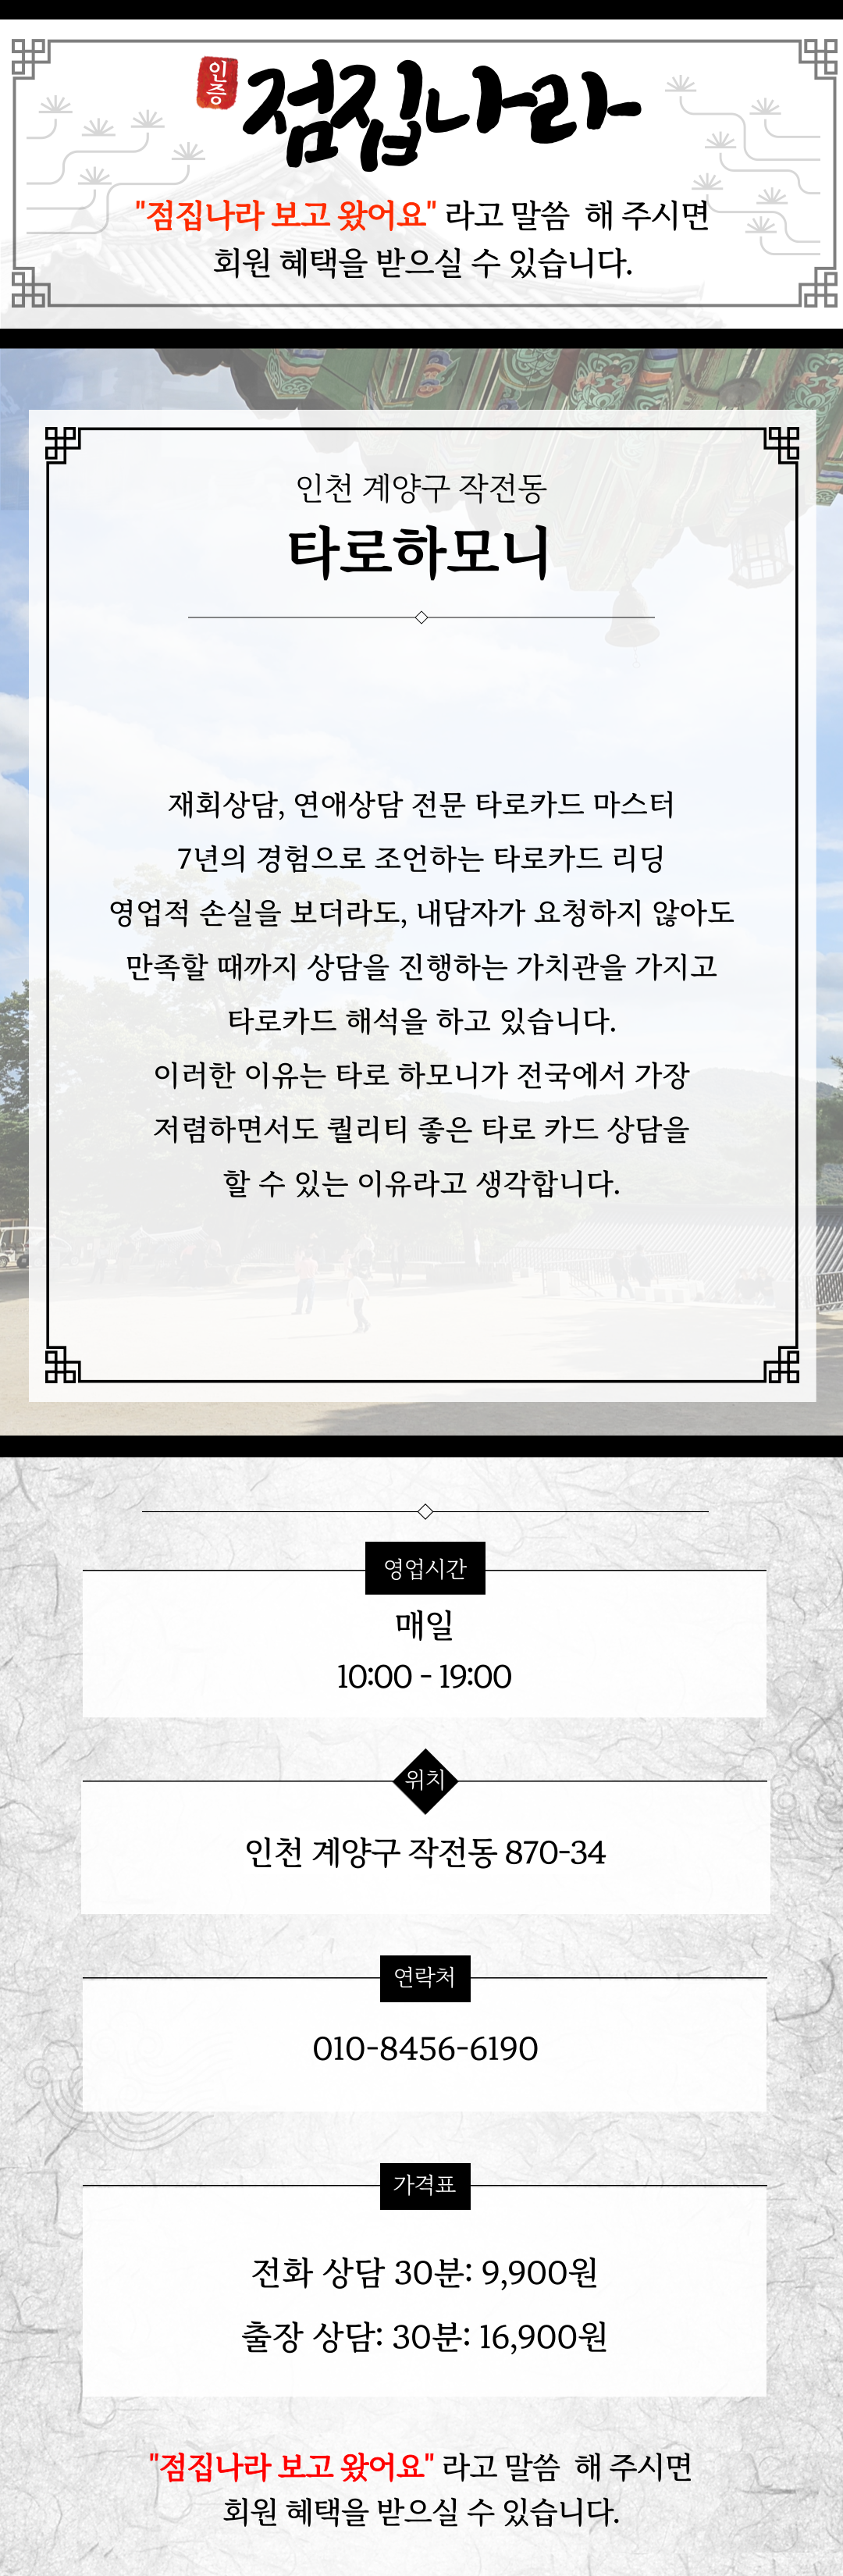 인천 타로하모니 정보소개